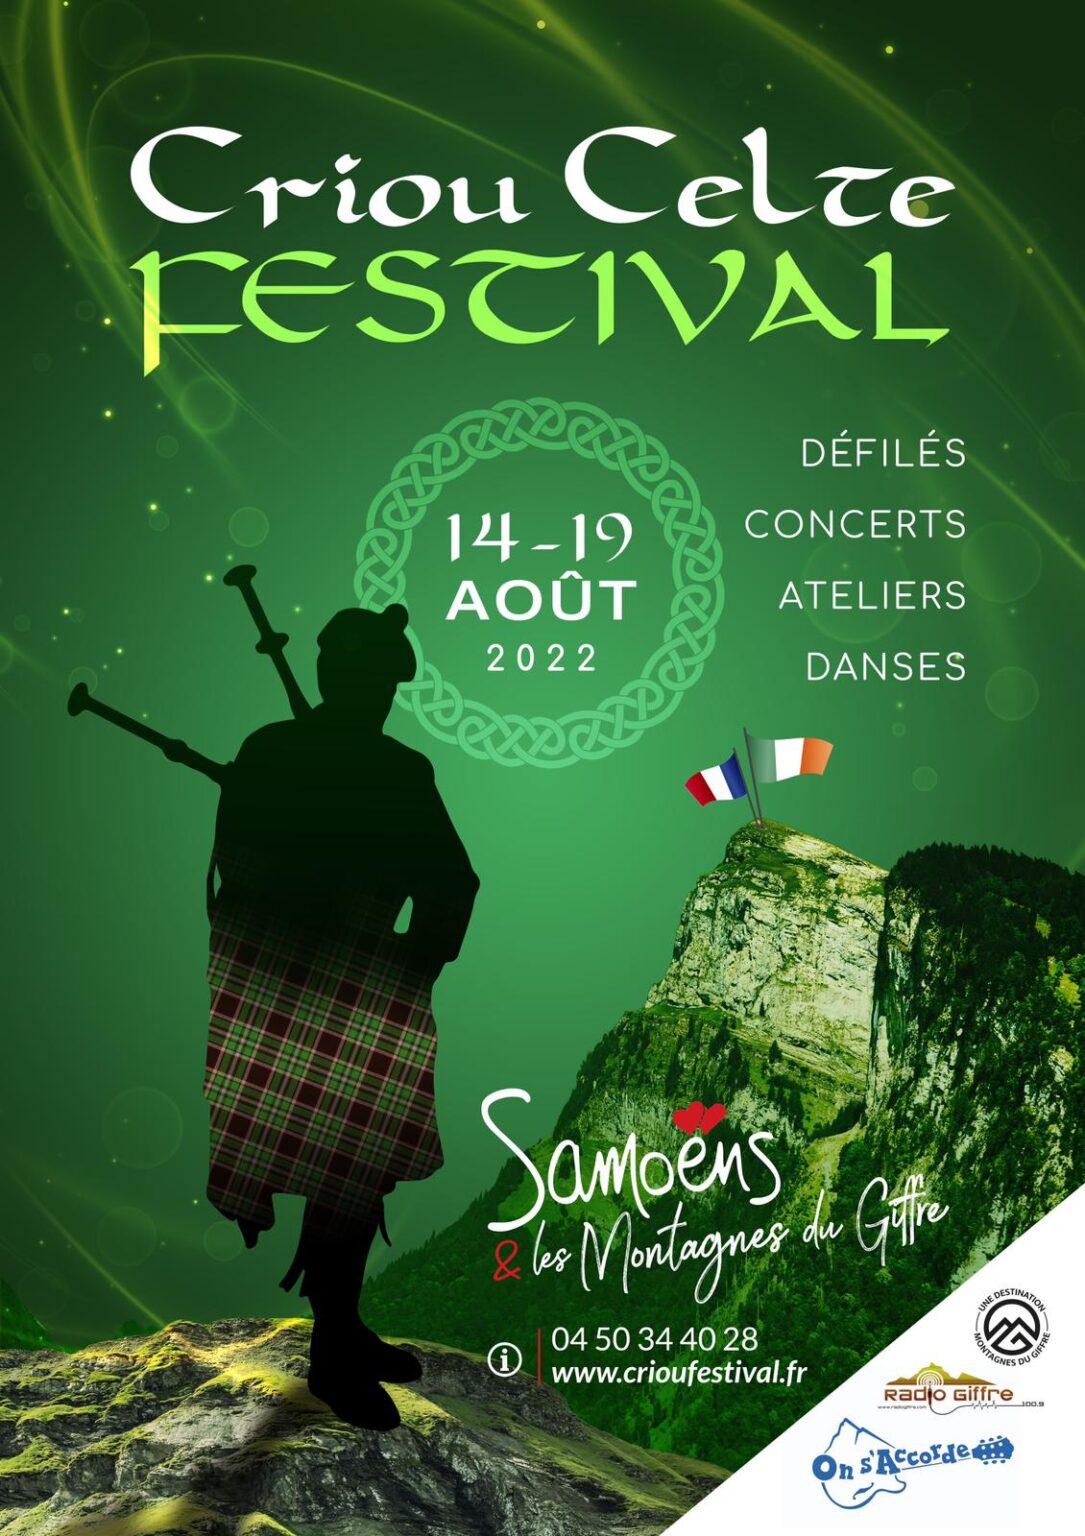 Criou Celte Festival du 14 au 19 août 2022